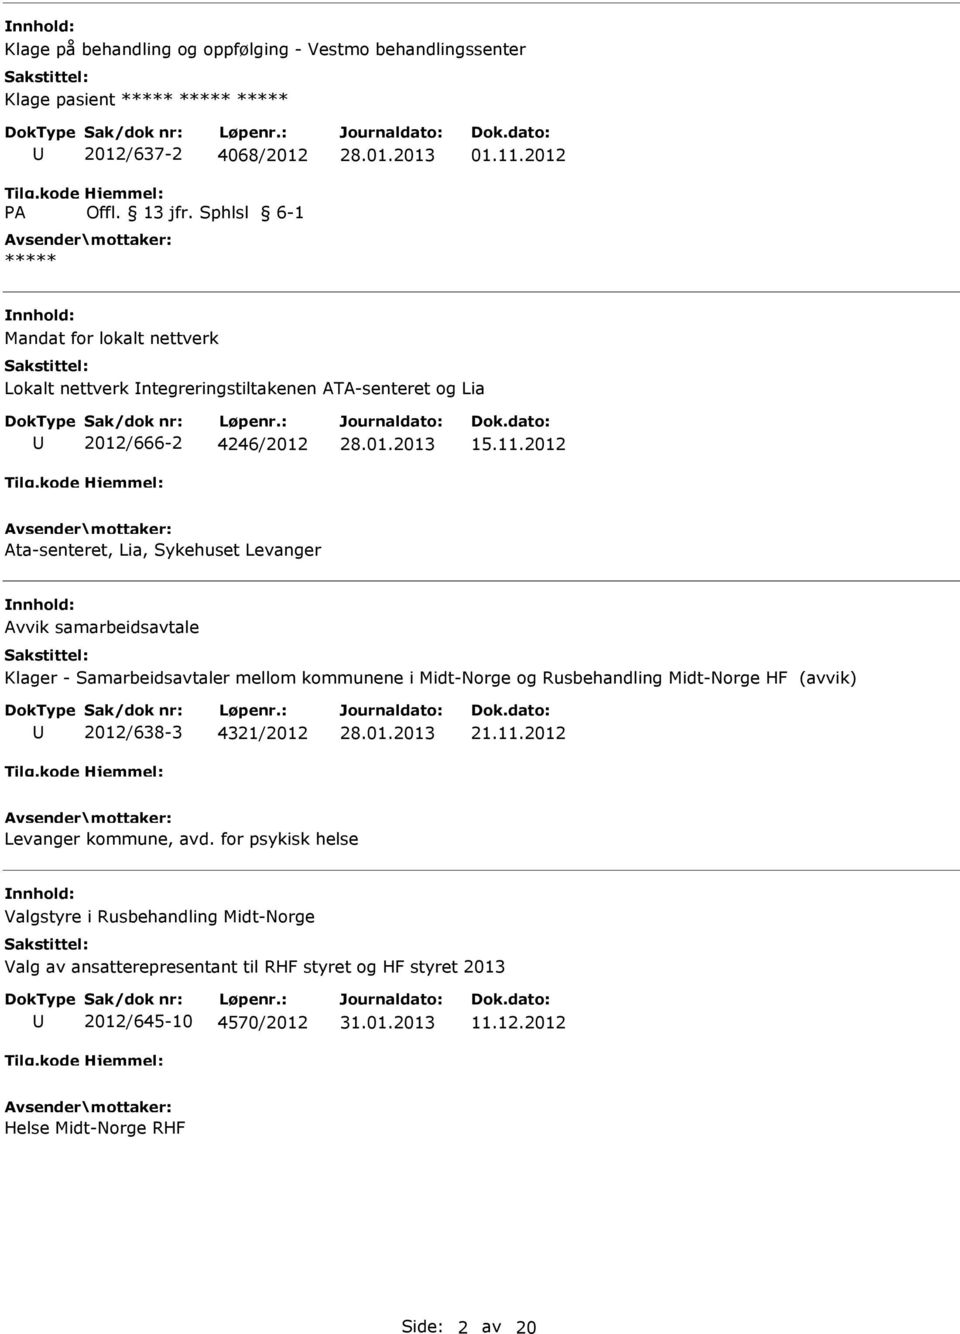 2012 Ata-senteret, Lia, Sykehuset Levanger Avvik samarbeidsavtale Klager - Samarbeidsavtaler mellom kommunene i Midt-Norge og Rusbehandling Midt-Norge HF (avvik)